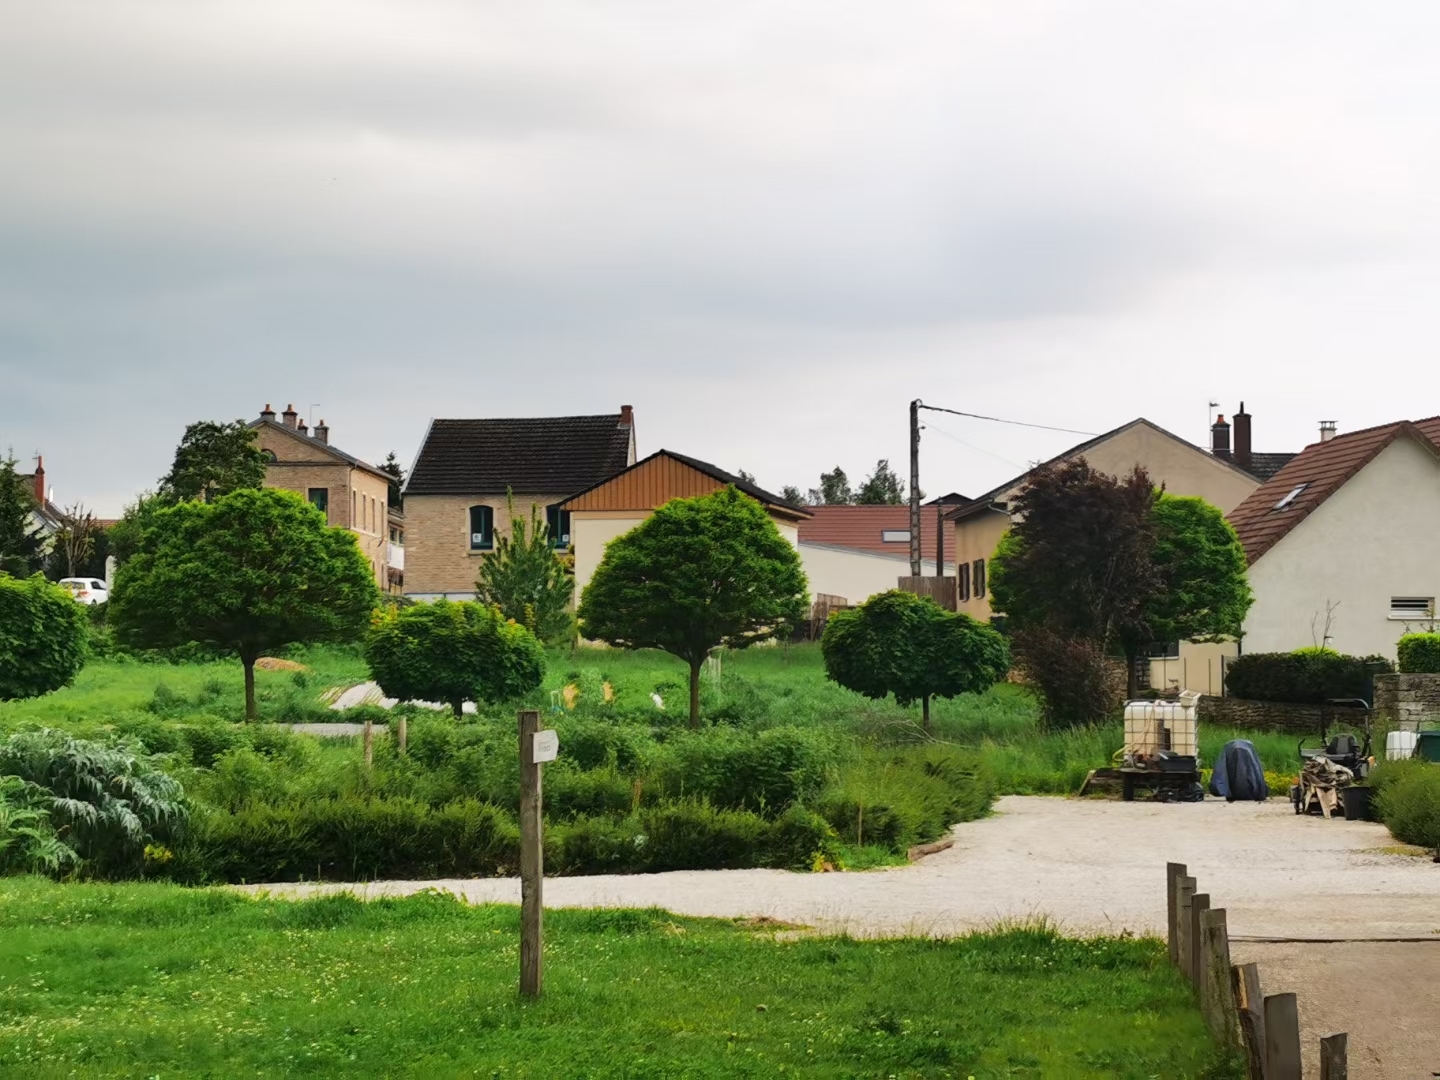 勃艮第是法国的乡村 是一首用心细细品读的田园诗 城市是门楣，裱饰繁华 乡村是后院，内存蕴实 奢华的现